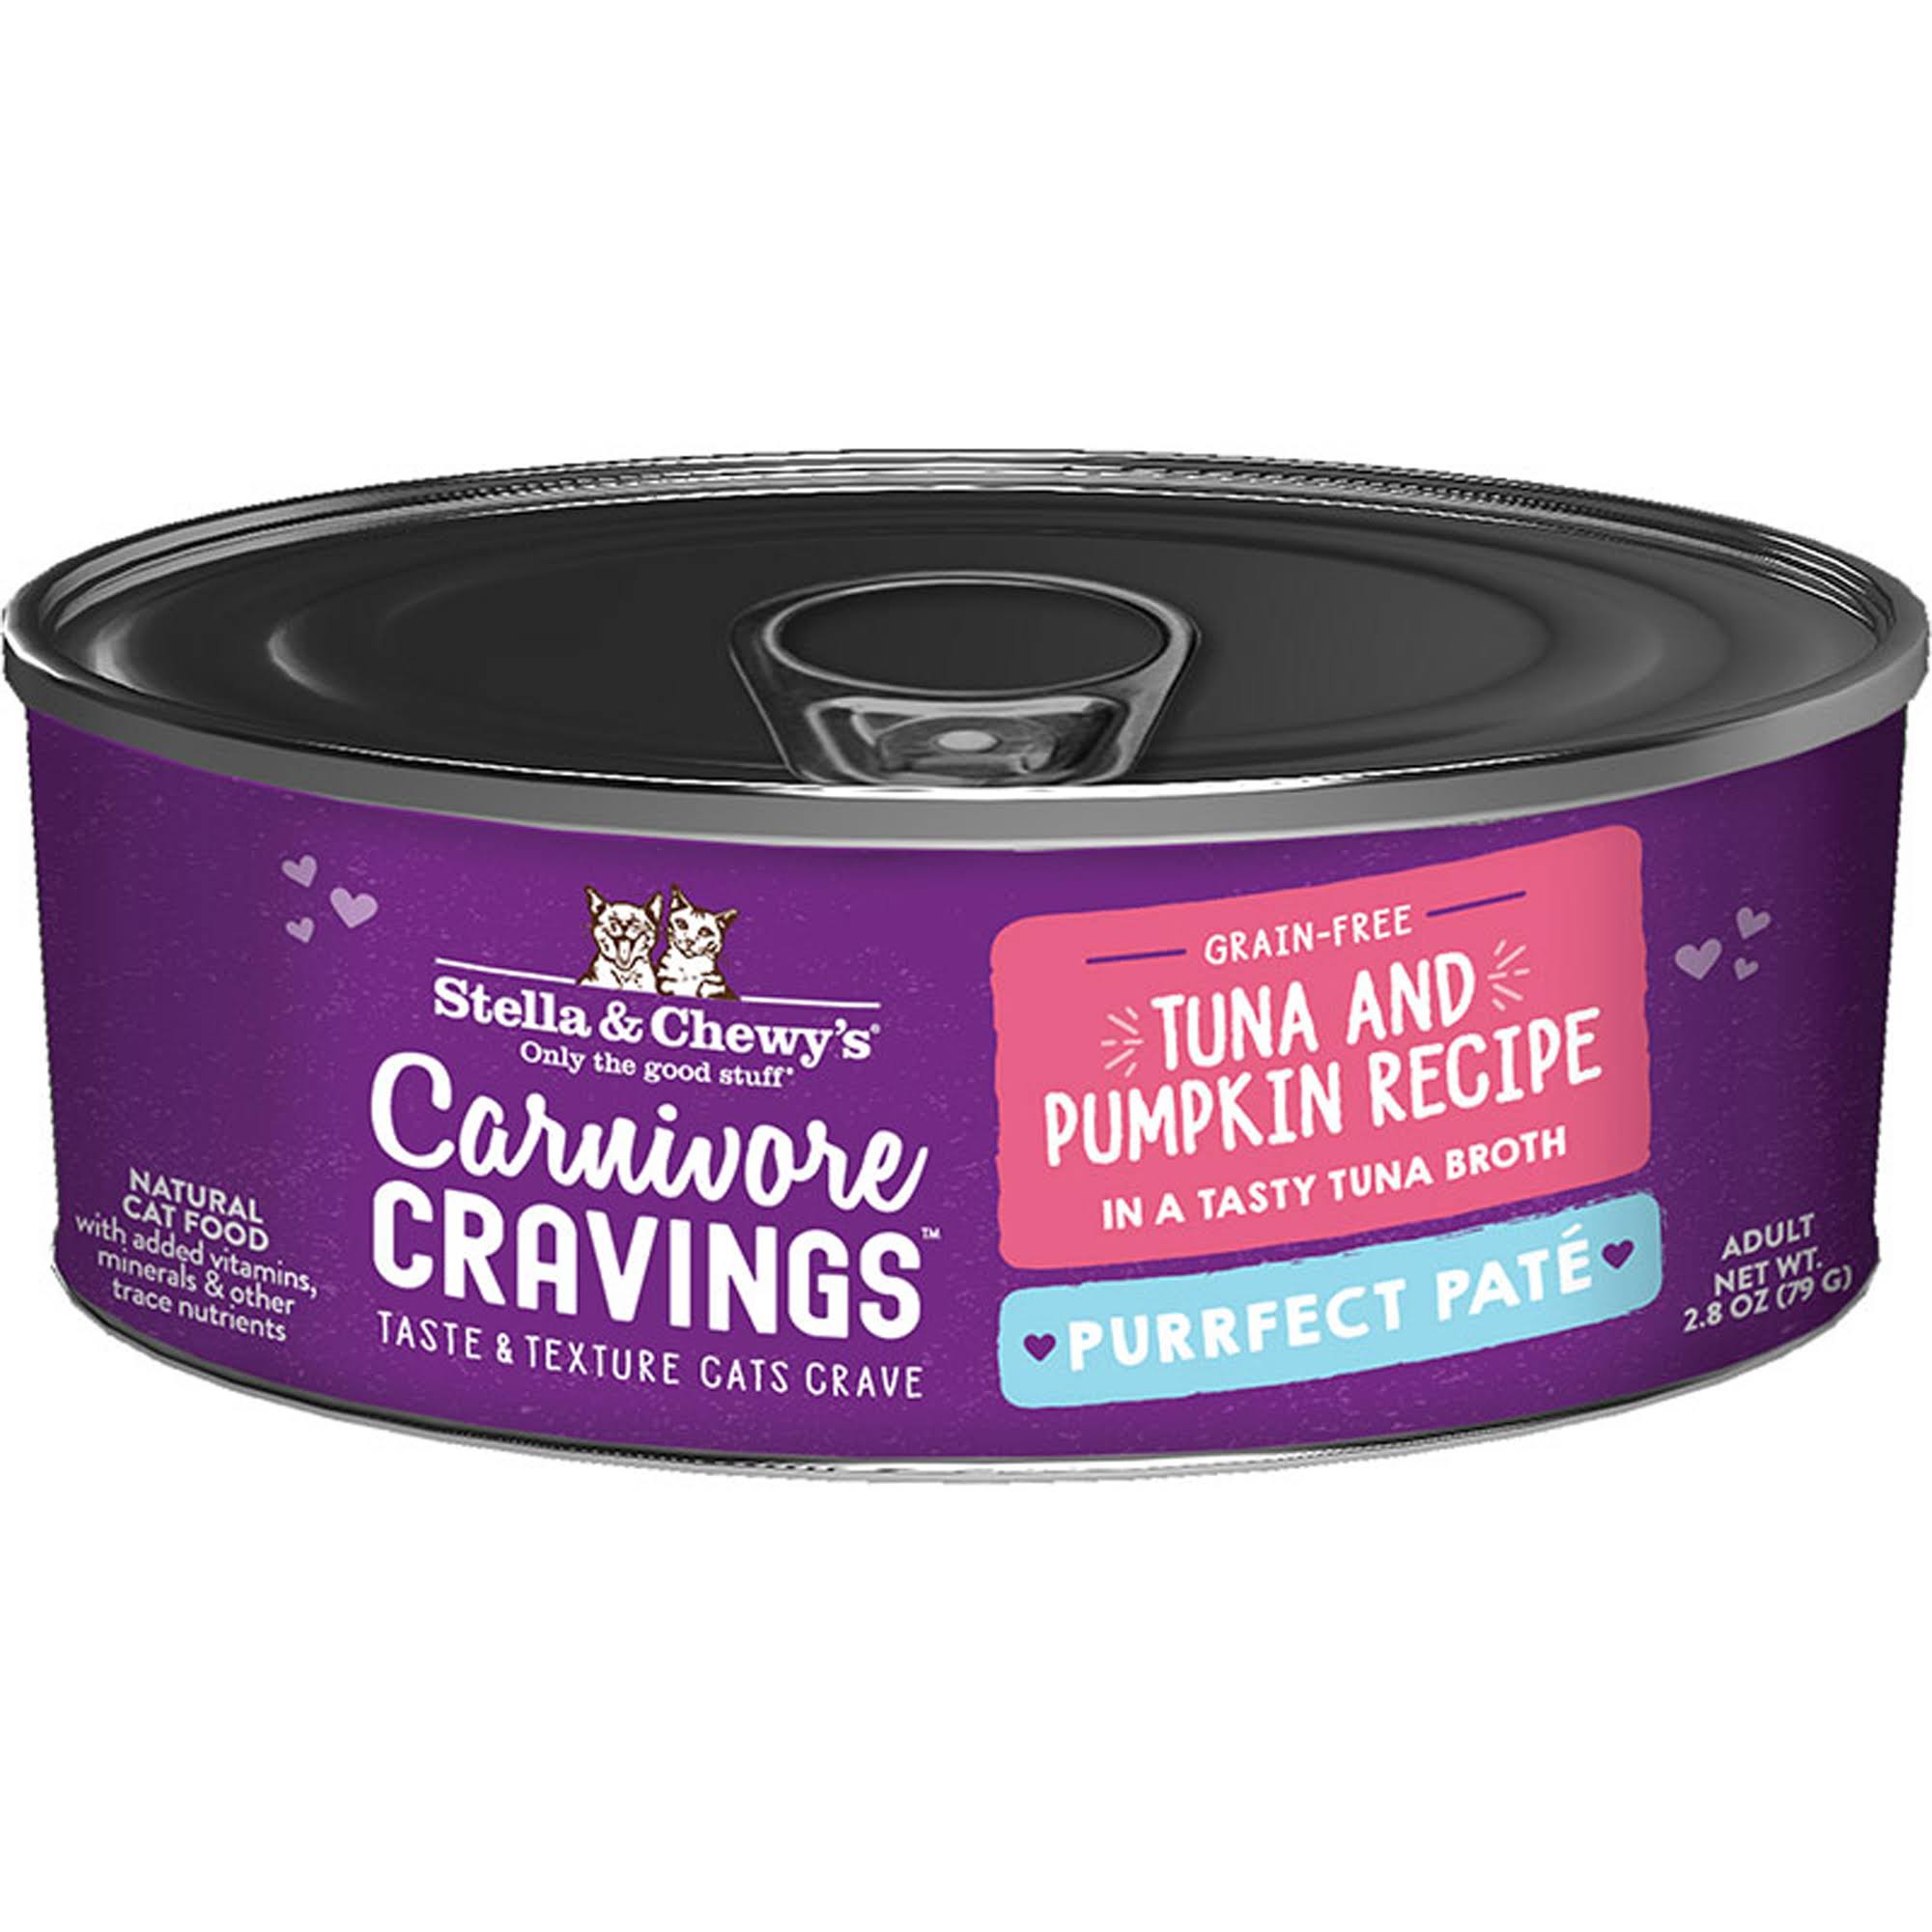 Stella & Chewy's 2.8oz Carnivore Cravings Tuna & Pumpkin Pate